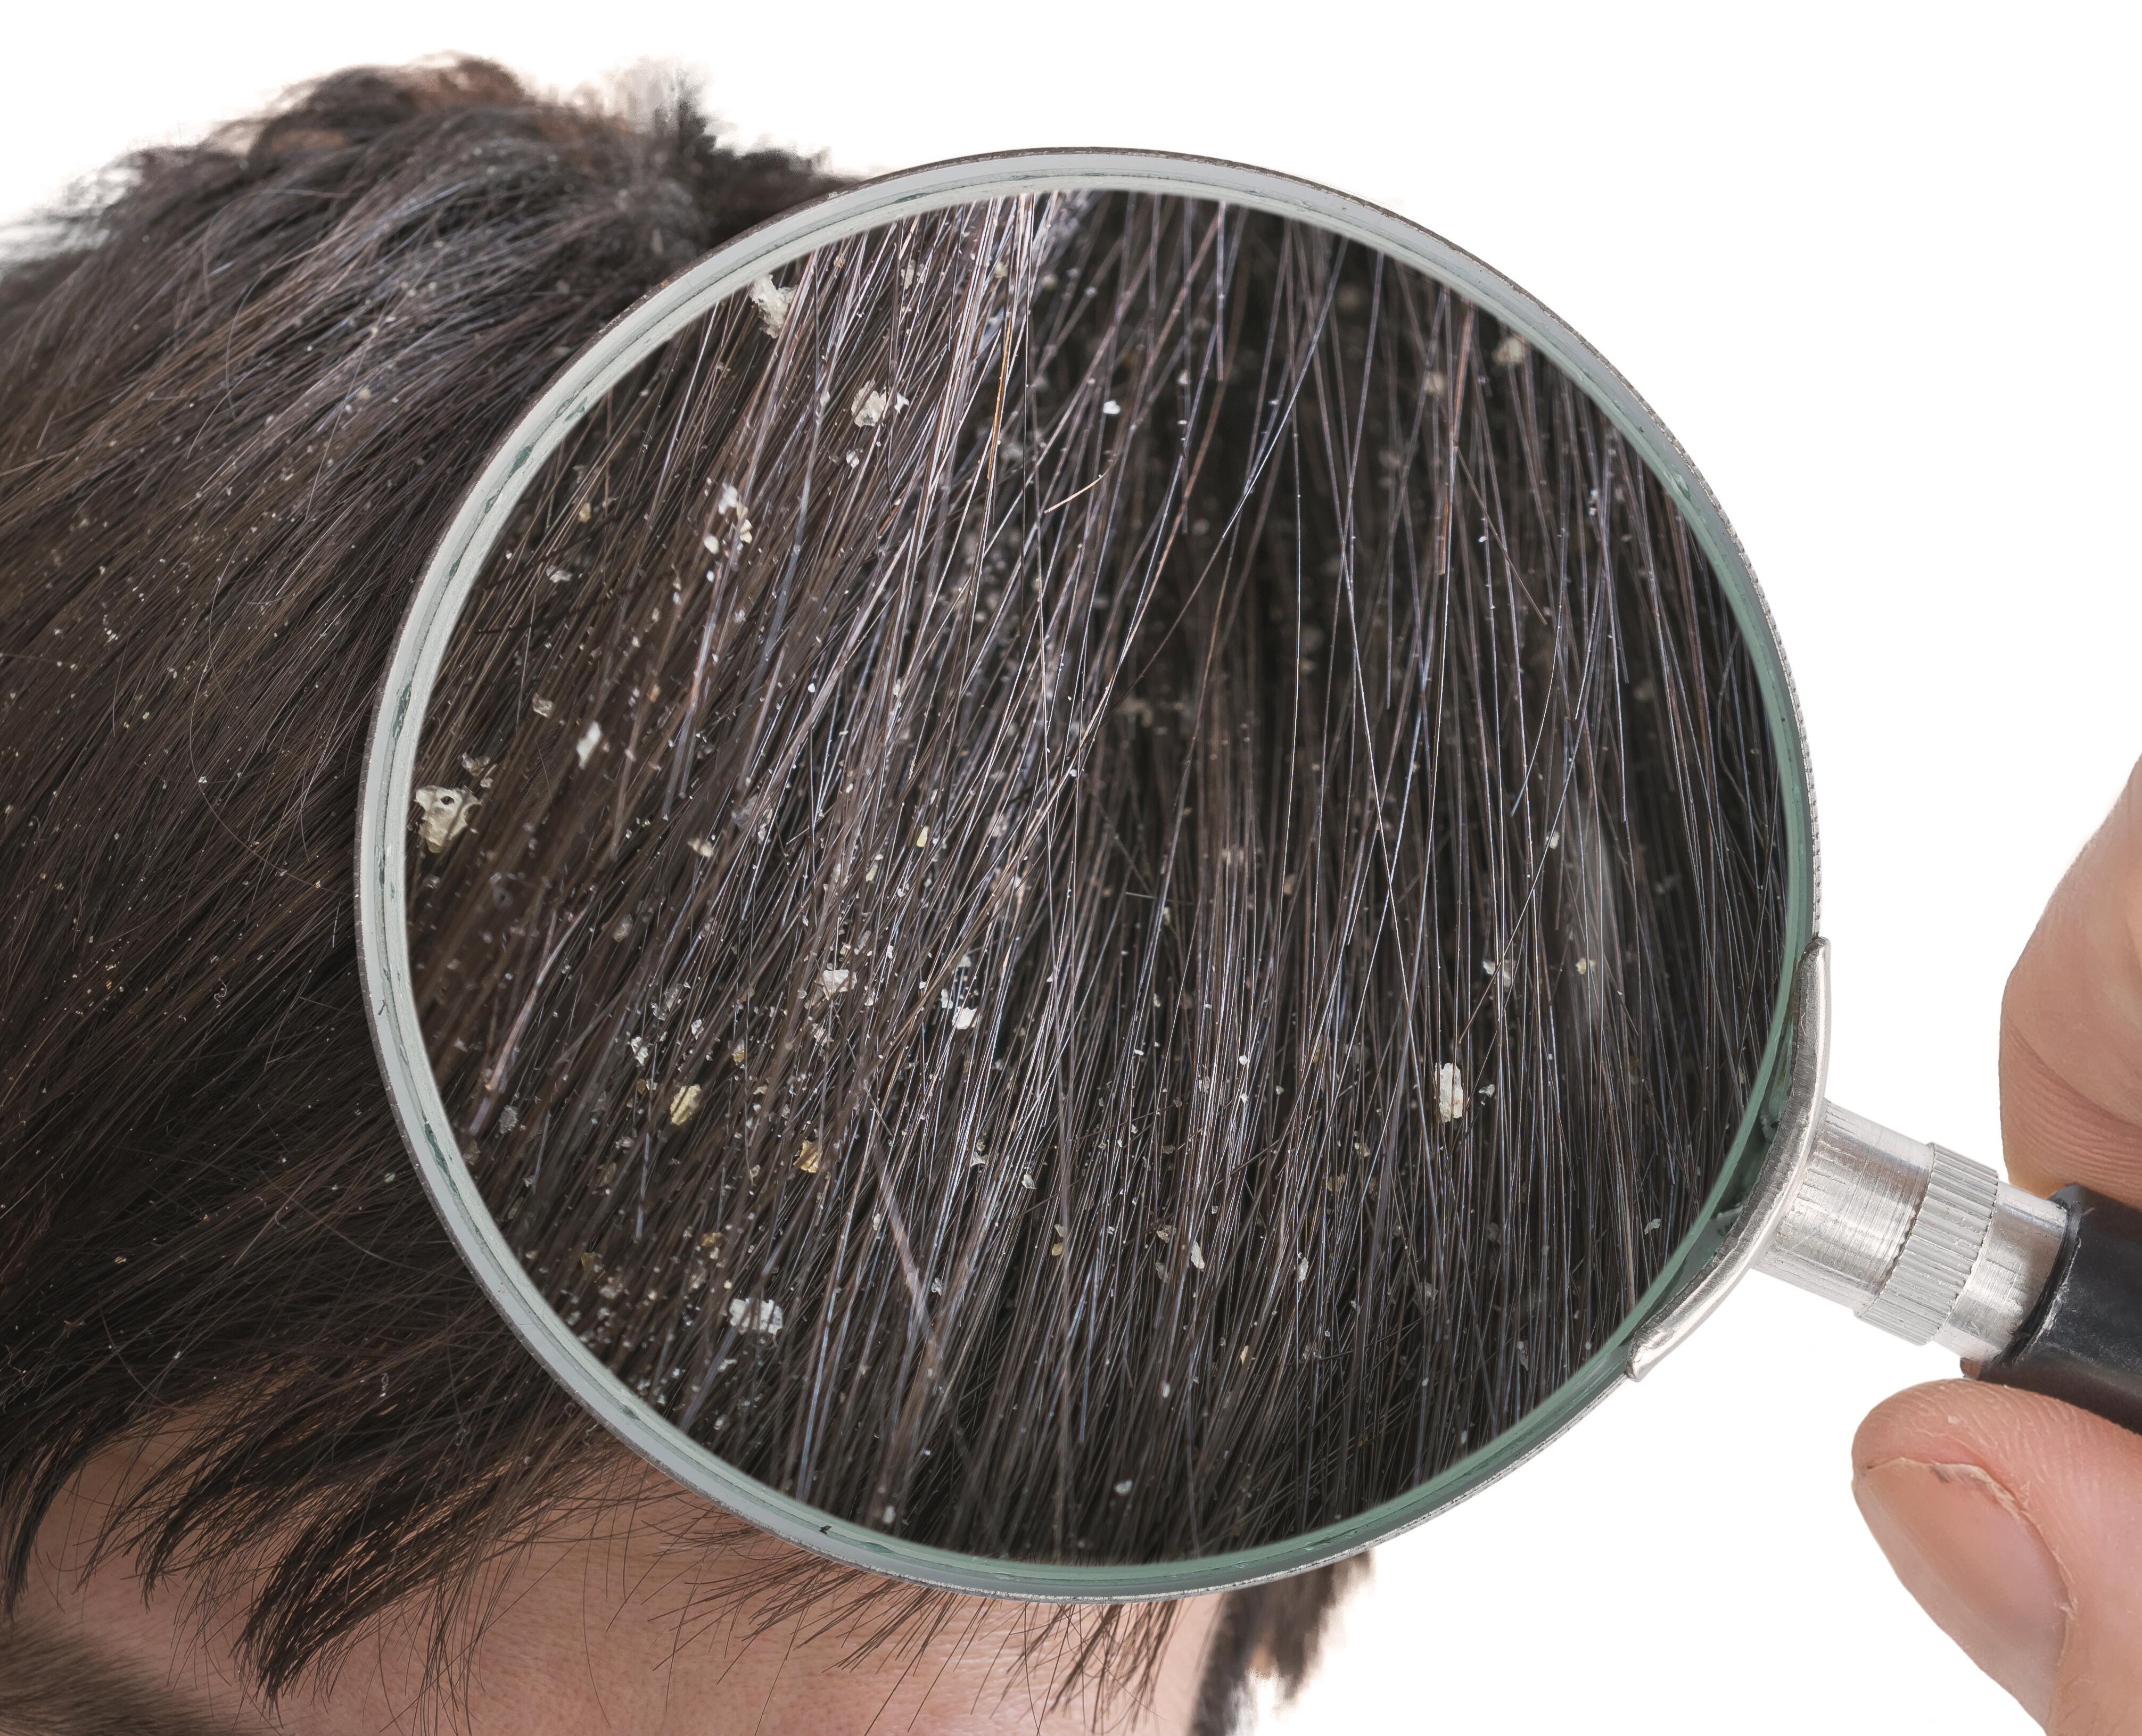 Pellicules dans les cheveux : causes & traitements